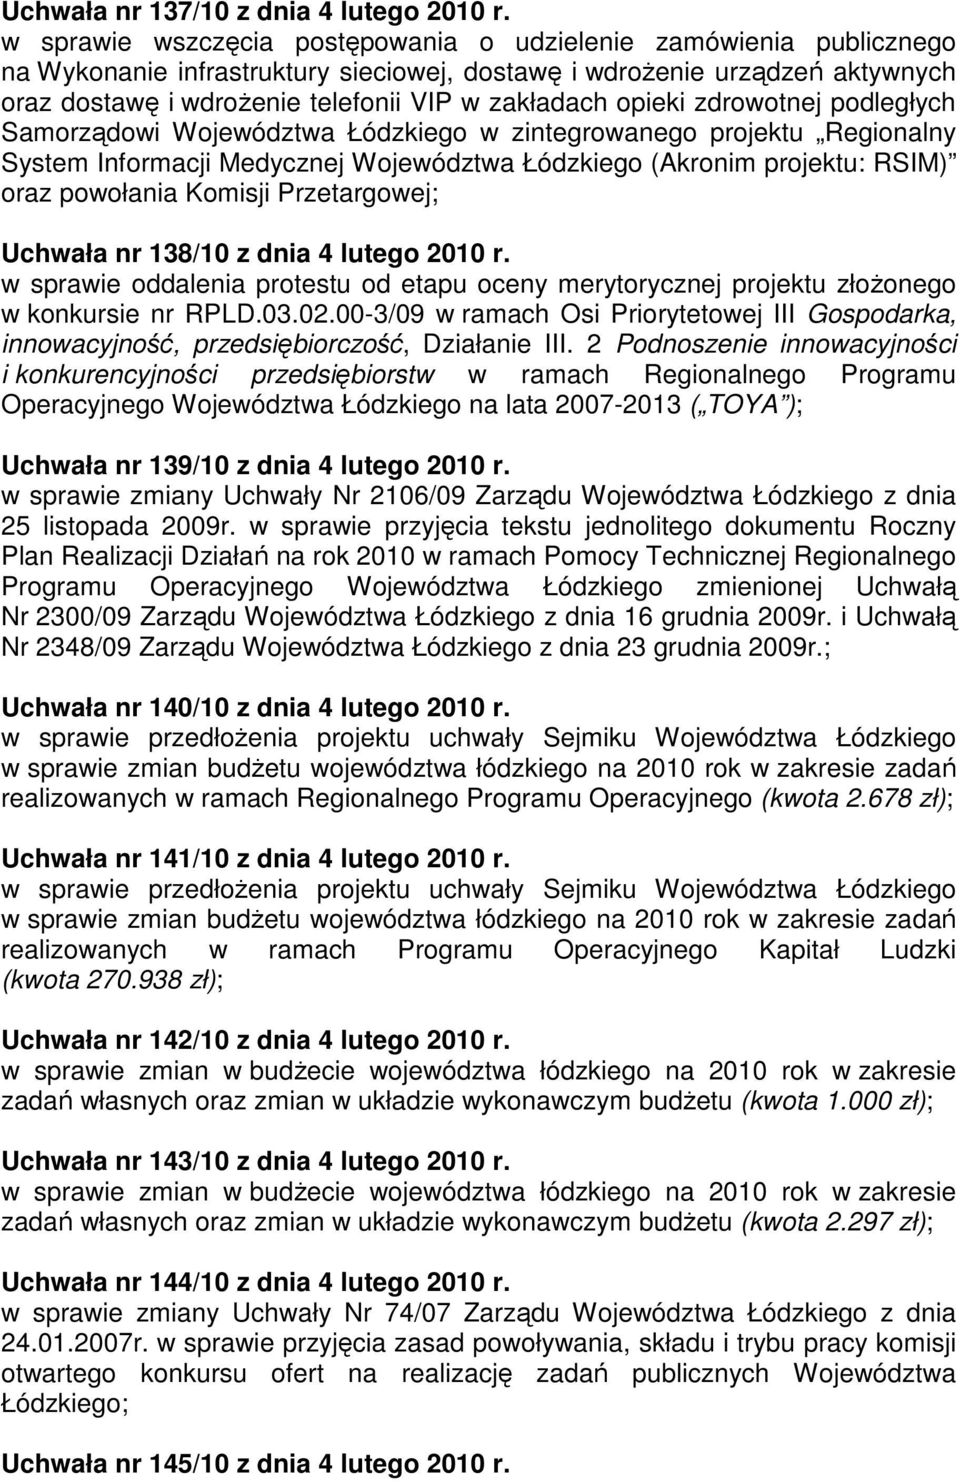 opieki zdrowotnej podległych Samorządowi Województwa Łódzkiego w zintegrowanego projektu Regionalny System Informacji Medycznej Województwa Łódzkiego (Akronim projektu: RSIM) oraz powołania Komisji